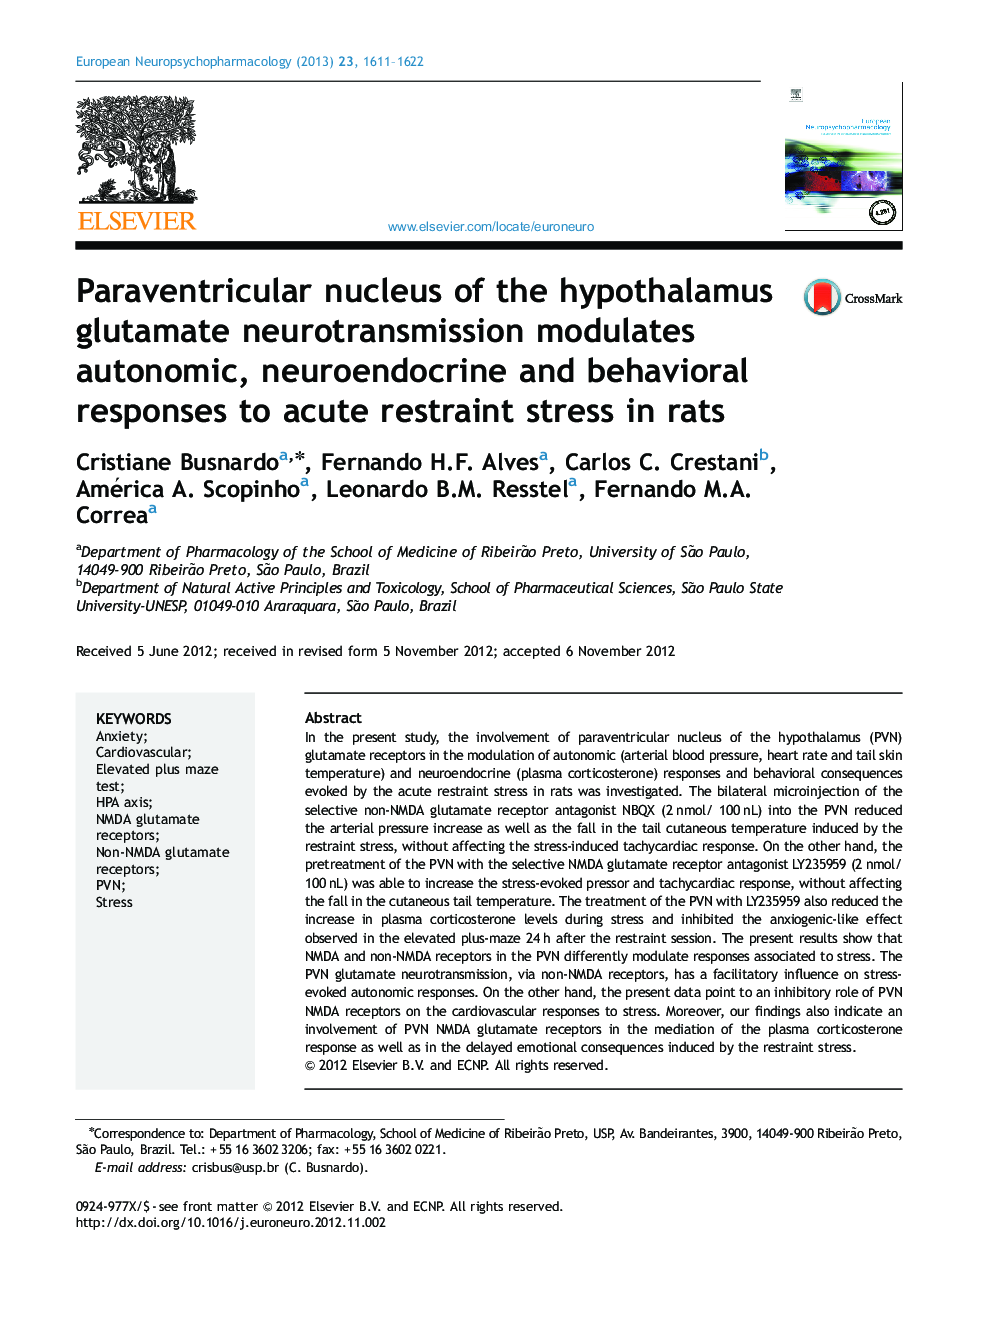 هسته پروژسترونیک انتقال عصبی گلوتامات هیپوتالاموس، واکنش های اتونوم، نوروآندوکرین و رفتاری را به استرس محدود کننده حاد در موش صحرایی متصل می کند 